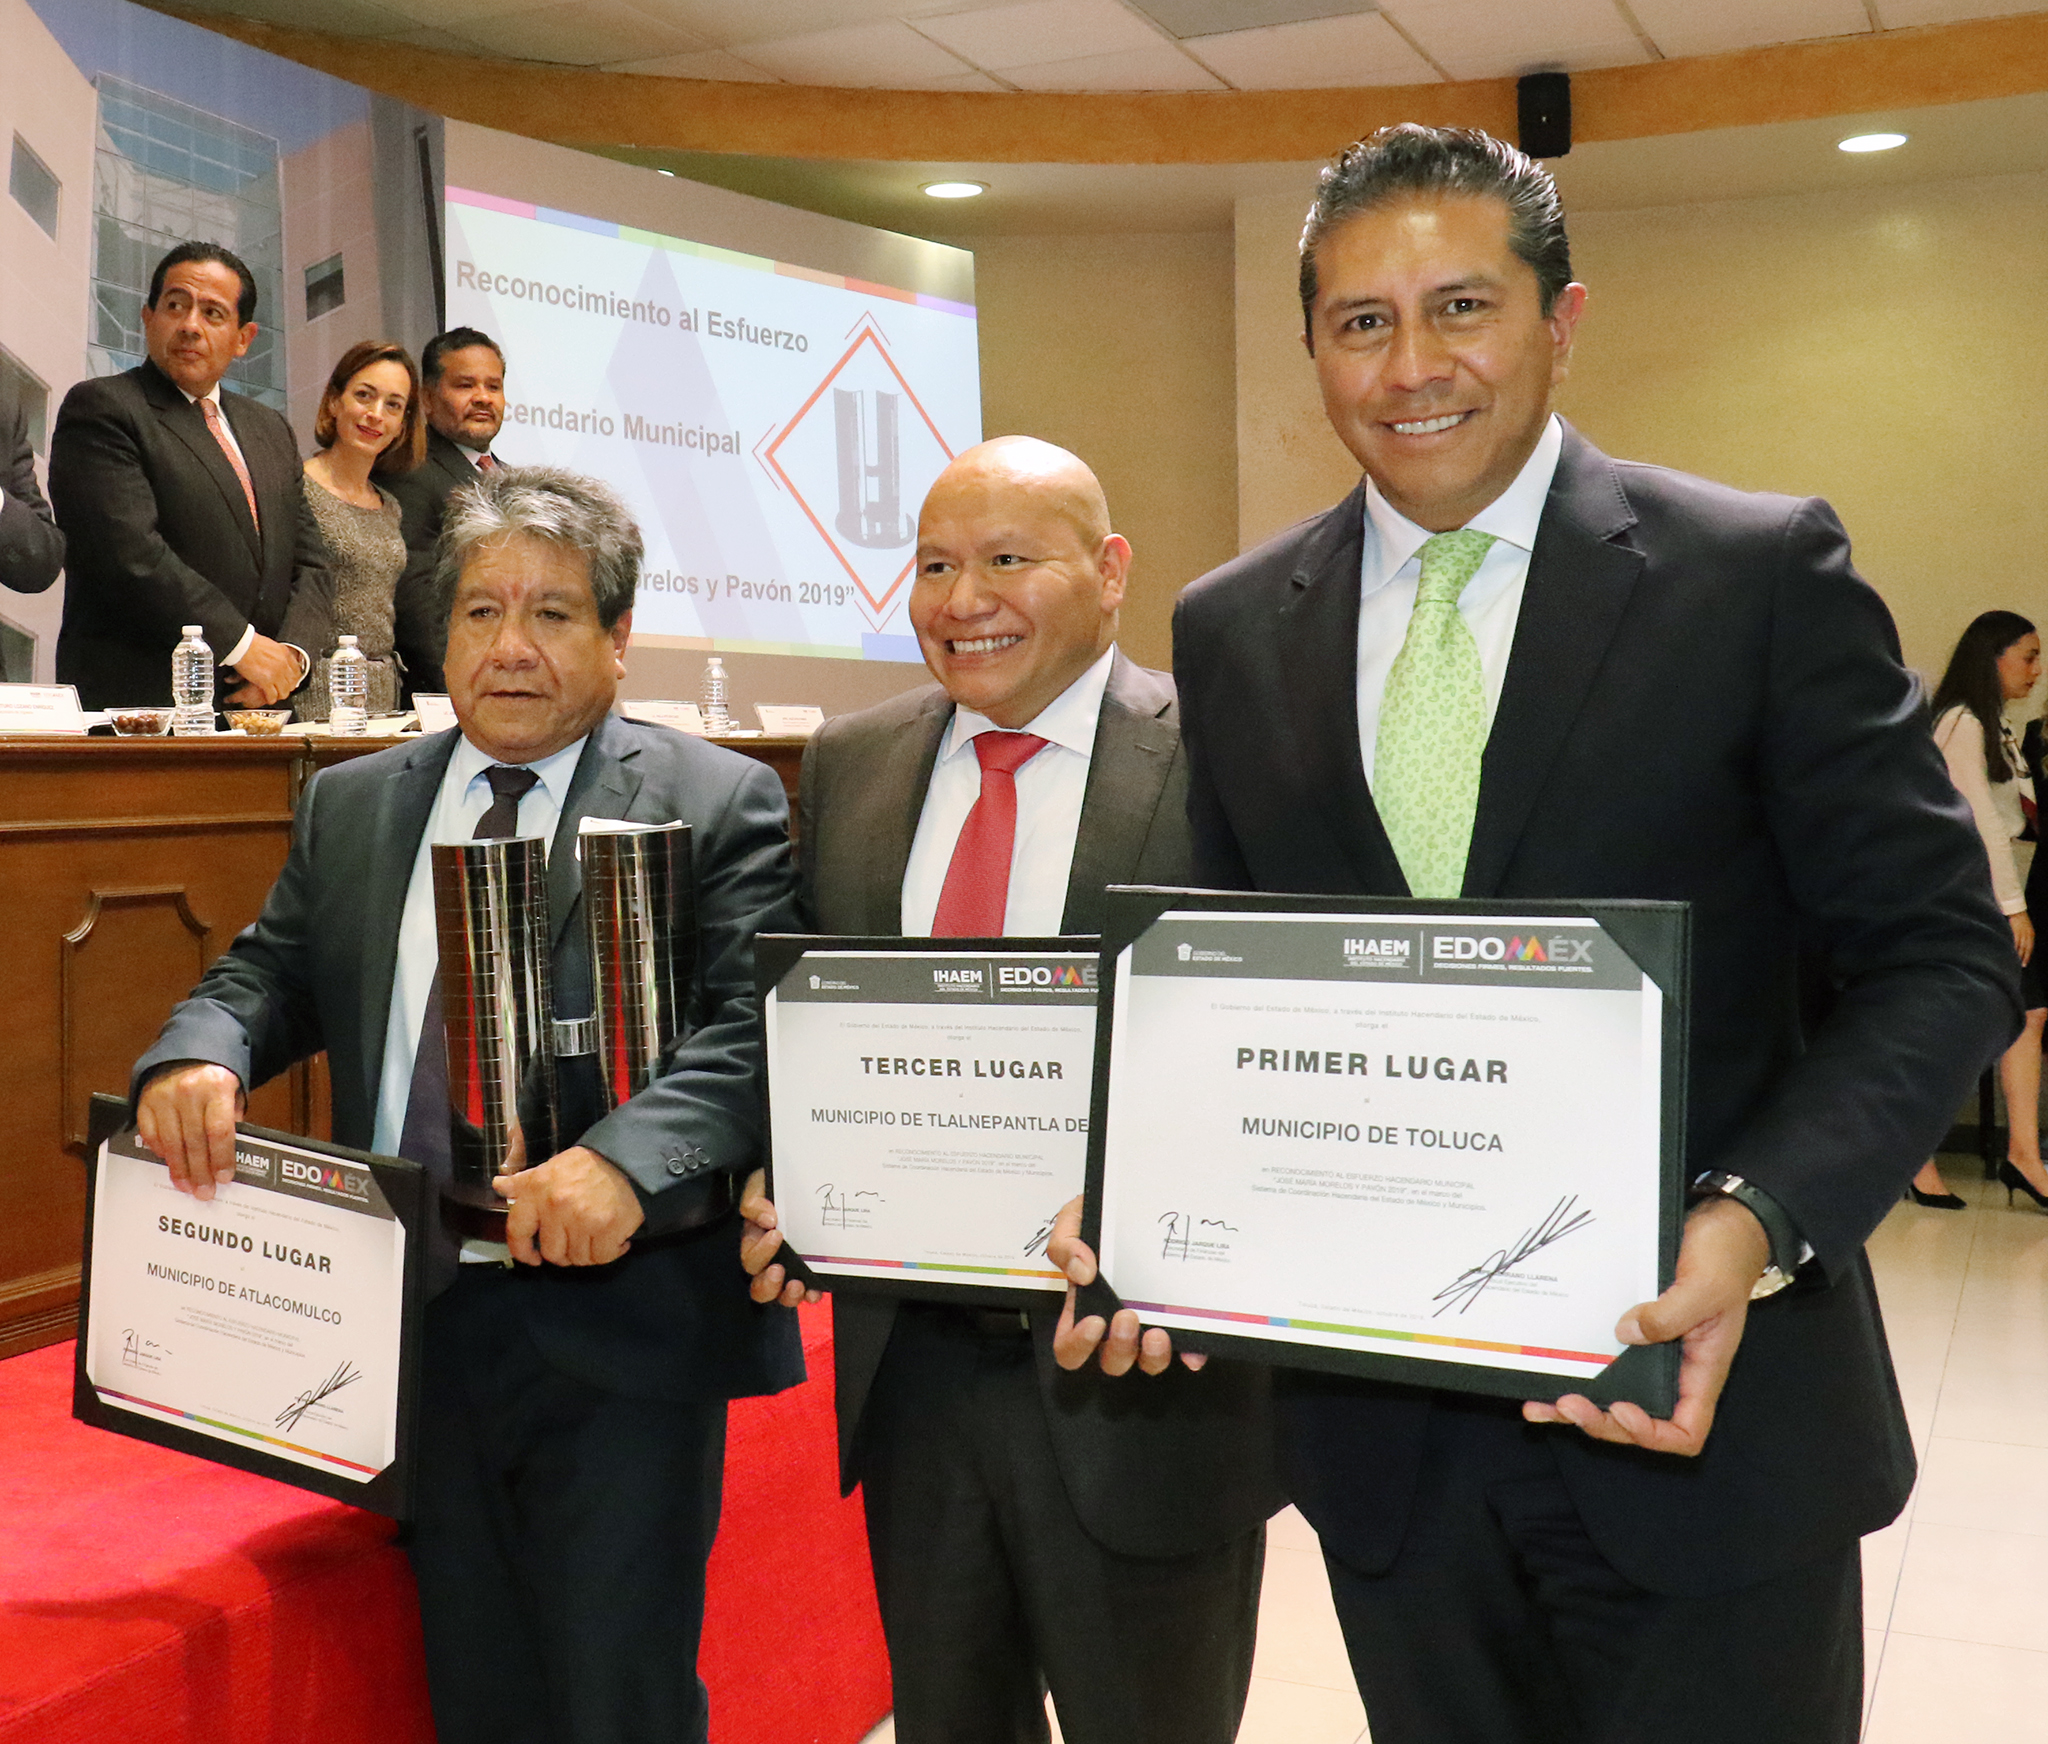 Tlalnepantla y Toluca reciben reconocimientos por sus buenas finanzas #regionmx